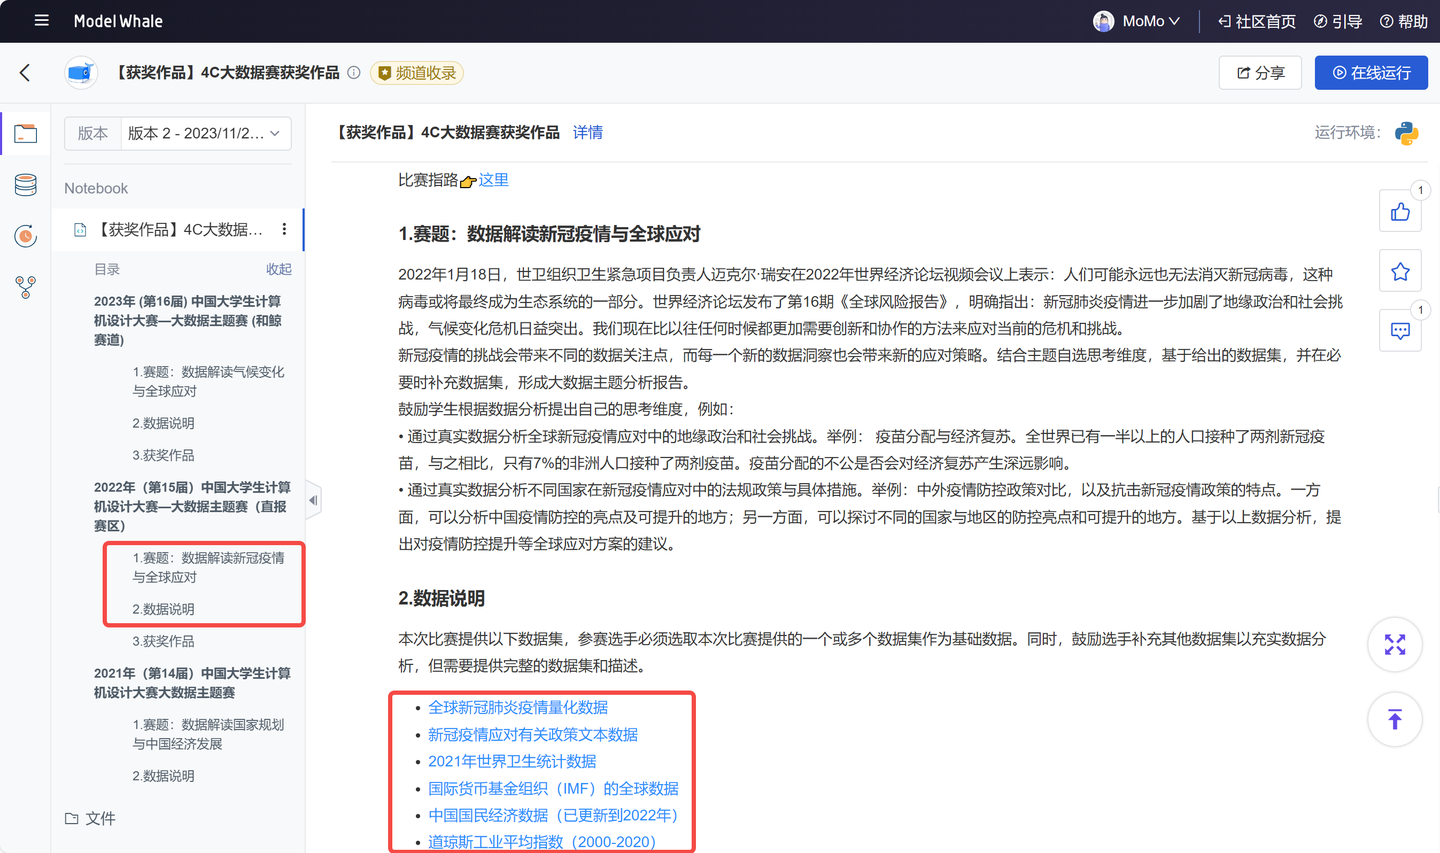 【获奖作品公开】和鲸社区全方位协力师生备战中国大学生计算机设计大赛_算法_07